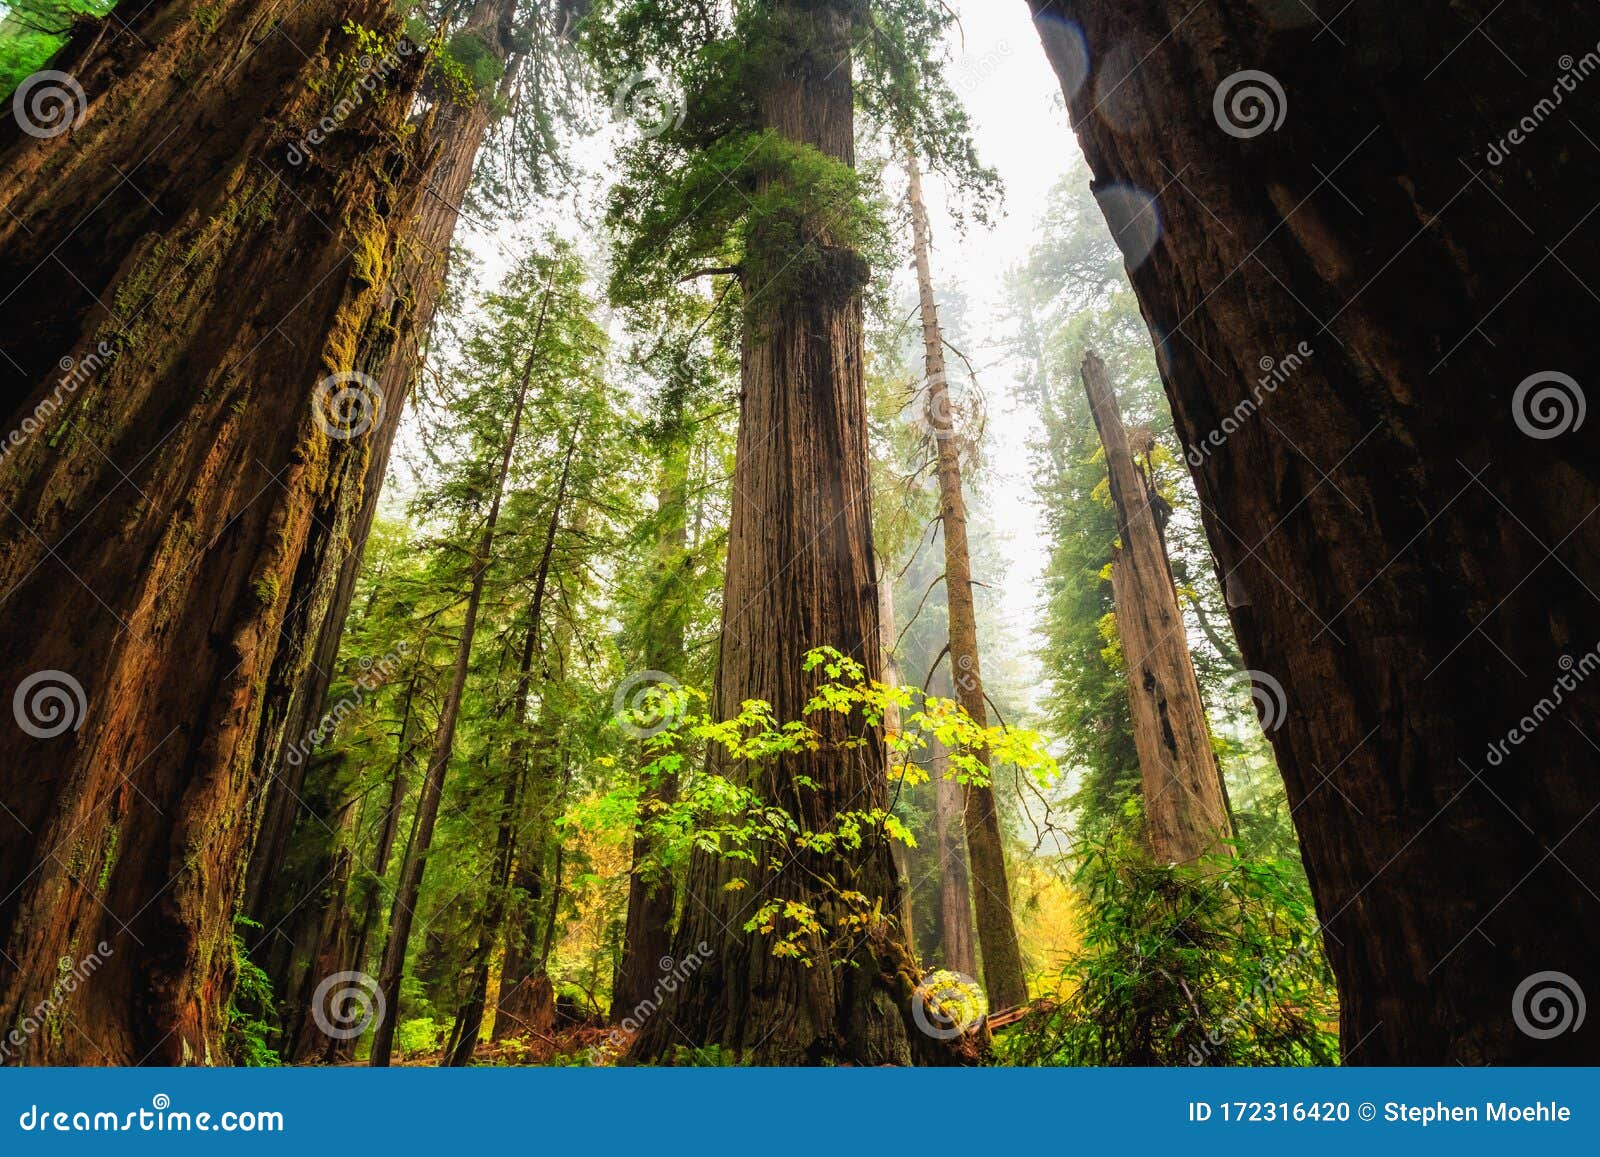 美洲杉国家公园在加利福尼亚 库存照片. 图片 包括有 日出, 巨型, 黎明, 红木, 内华达, 晒裂, 绿色 - 103940392